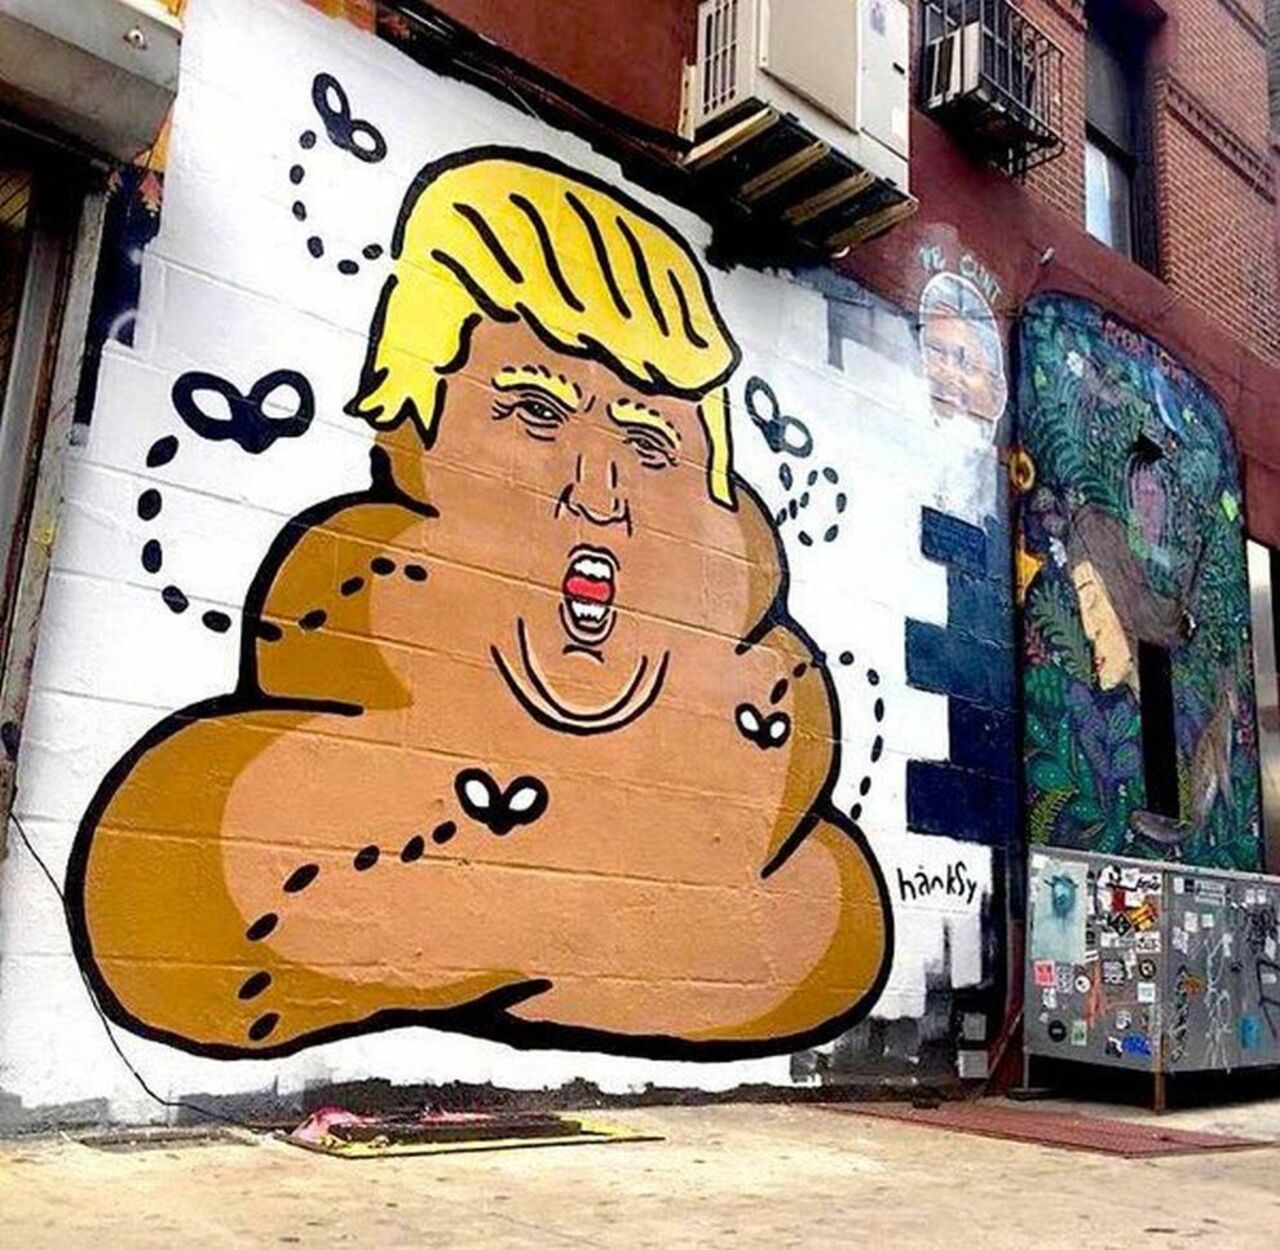 #Spraycan #Trump #PoliticalStreetart in #NYC by Hanksy. #TheResistance #Streetart https://t.co/xT5ojpFpDk